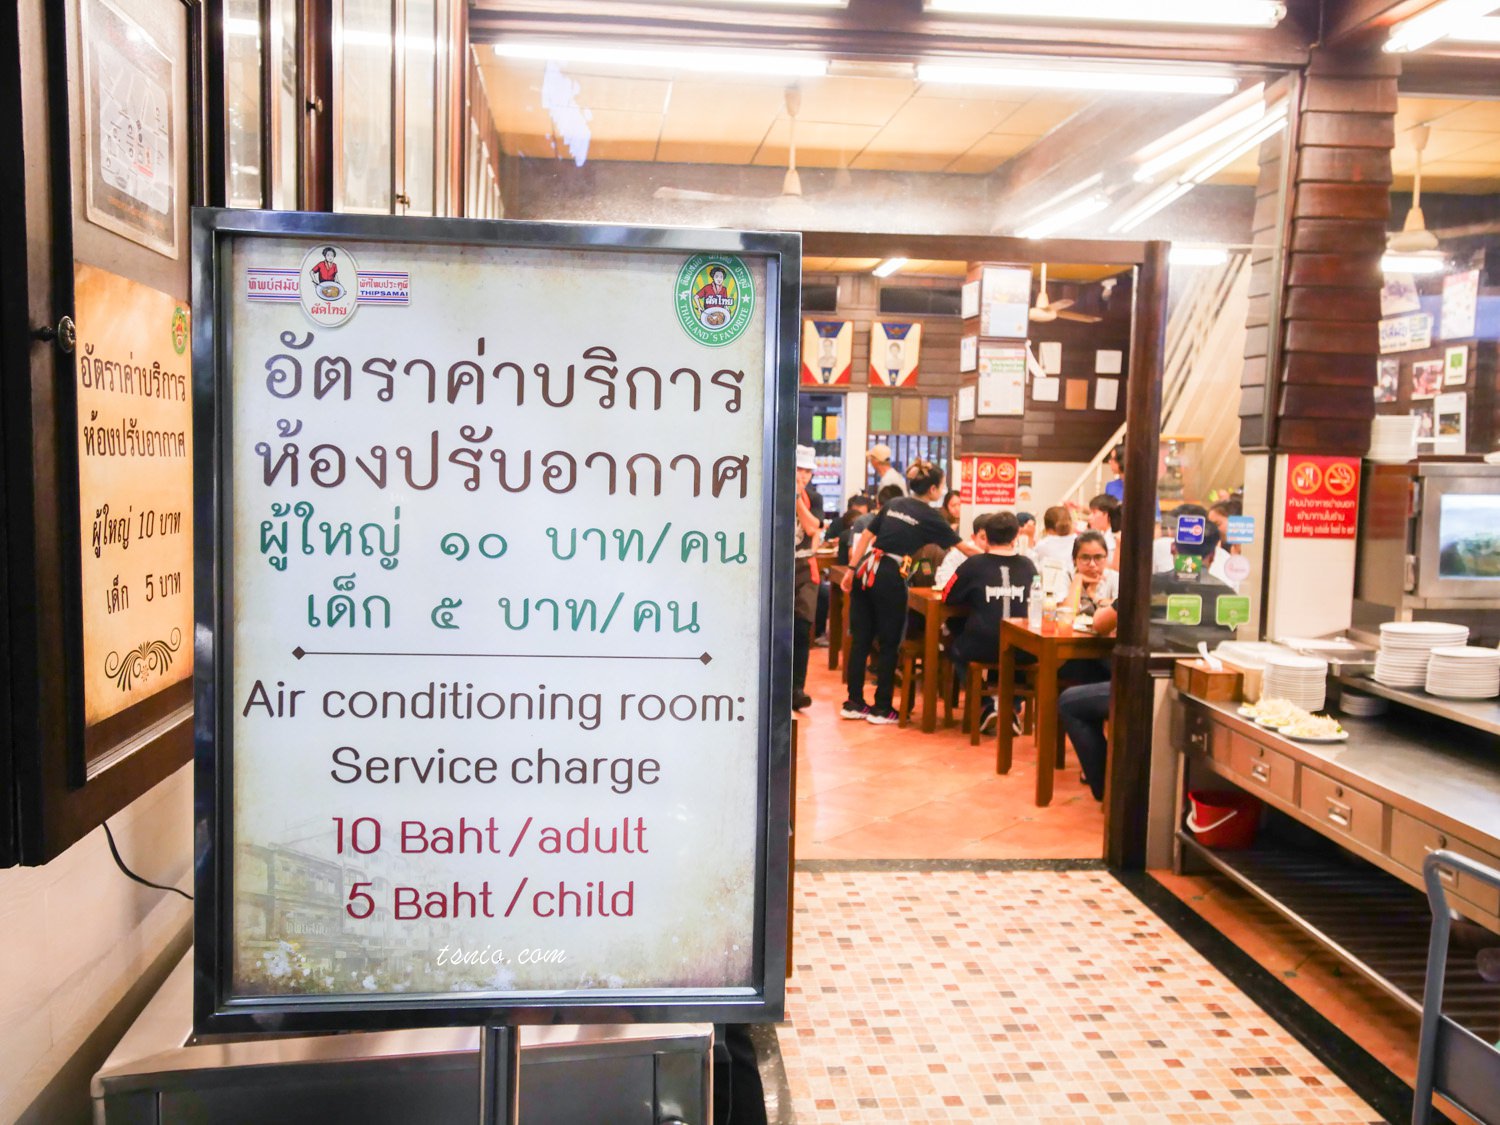 曼谷道地美食推薦 Thip Samai Pad Thai 鬼門泰式炒麵 舊城區夜間小吃